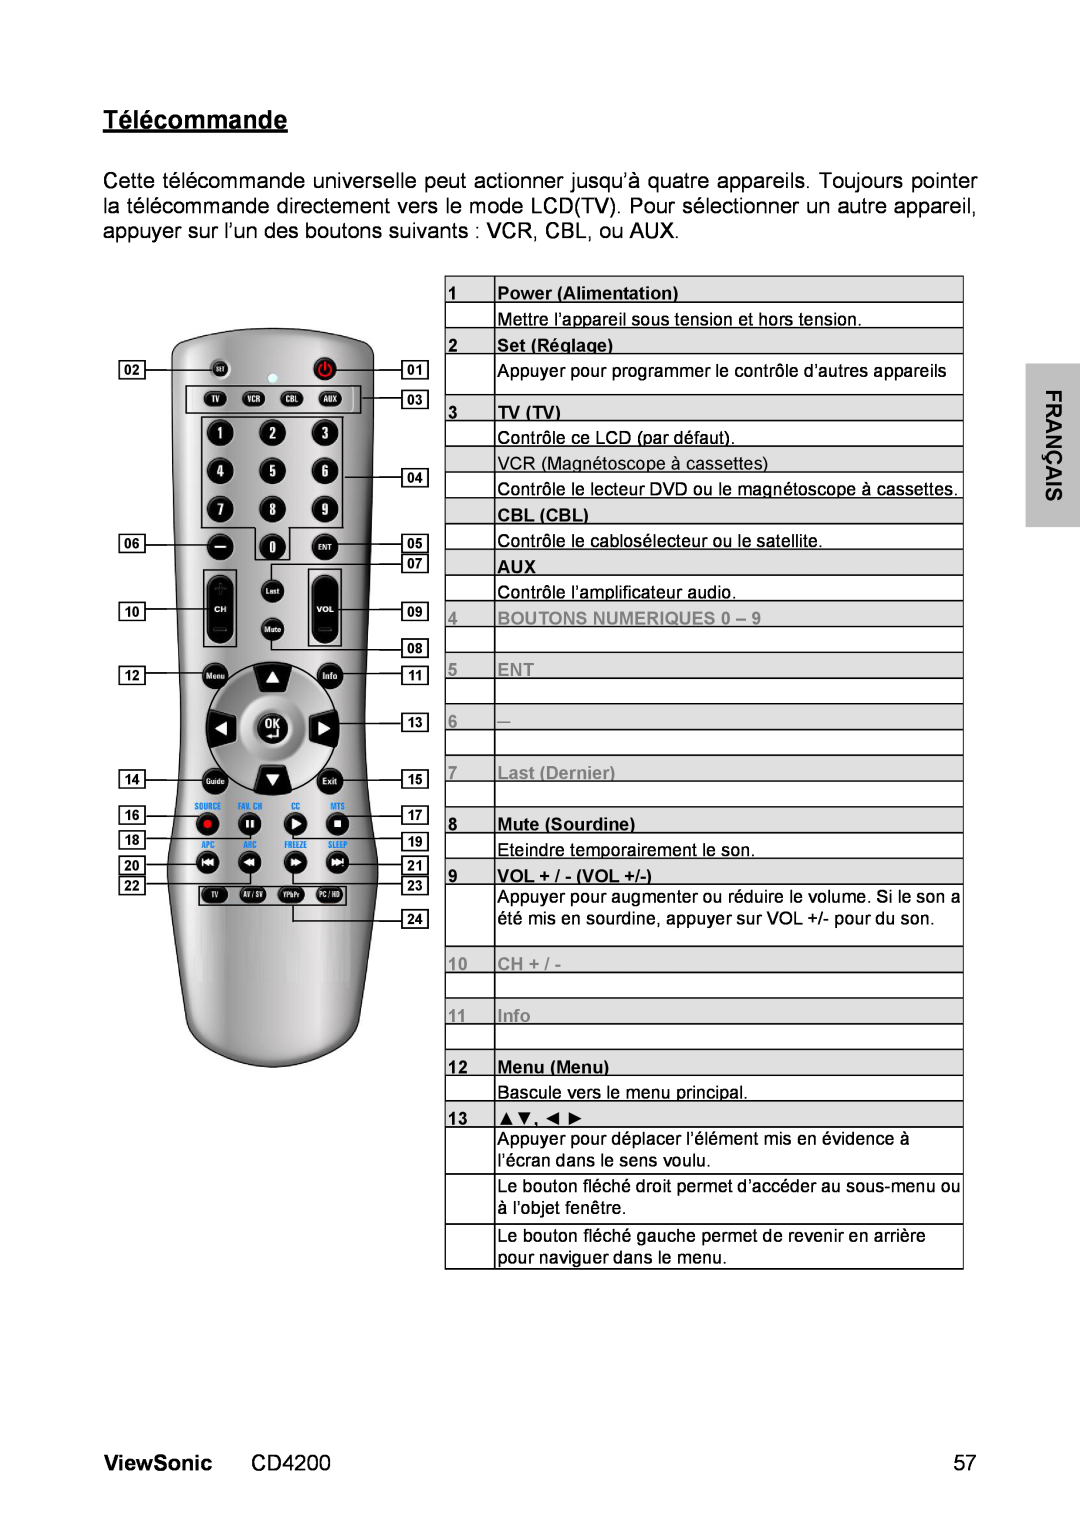 ViewSonic manual Télécommande, ViewSonic CD4200, BOUTONS NUMERIQUES 0, Last Dernier, Ch +, Info 